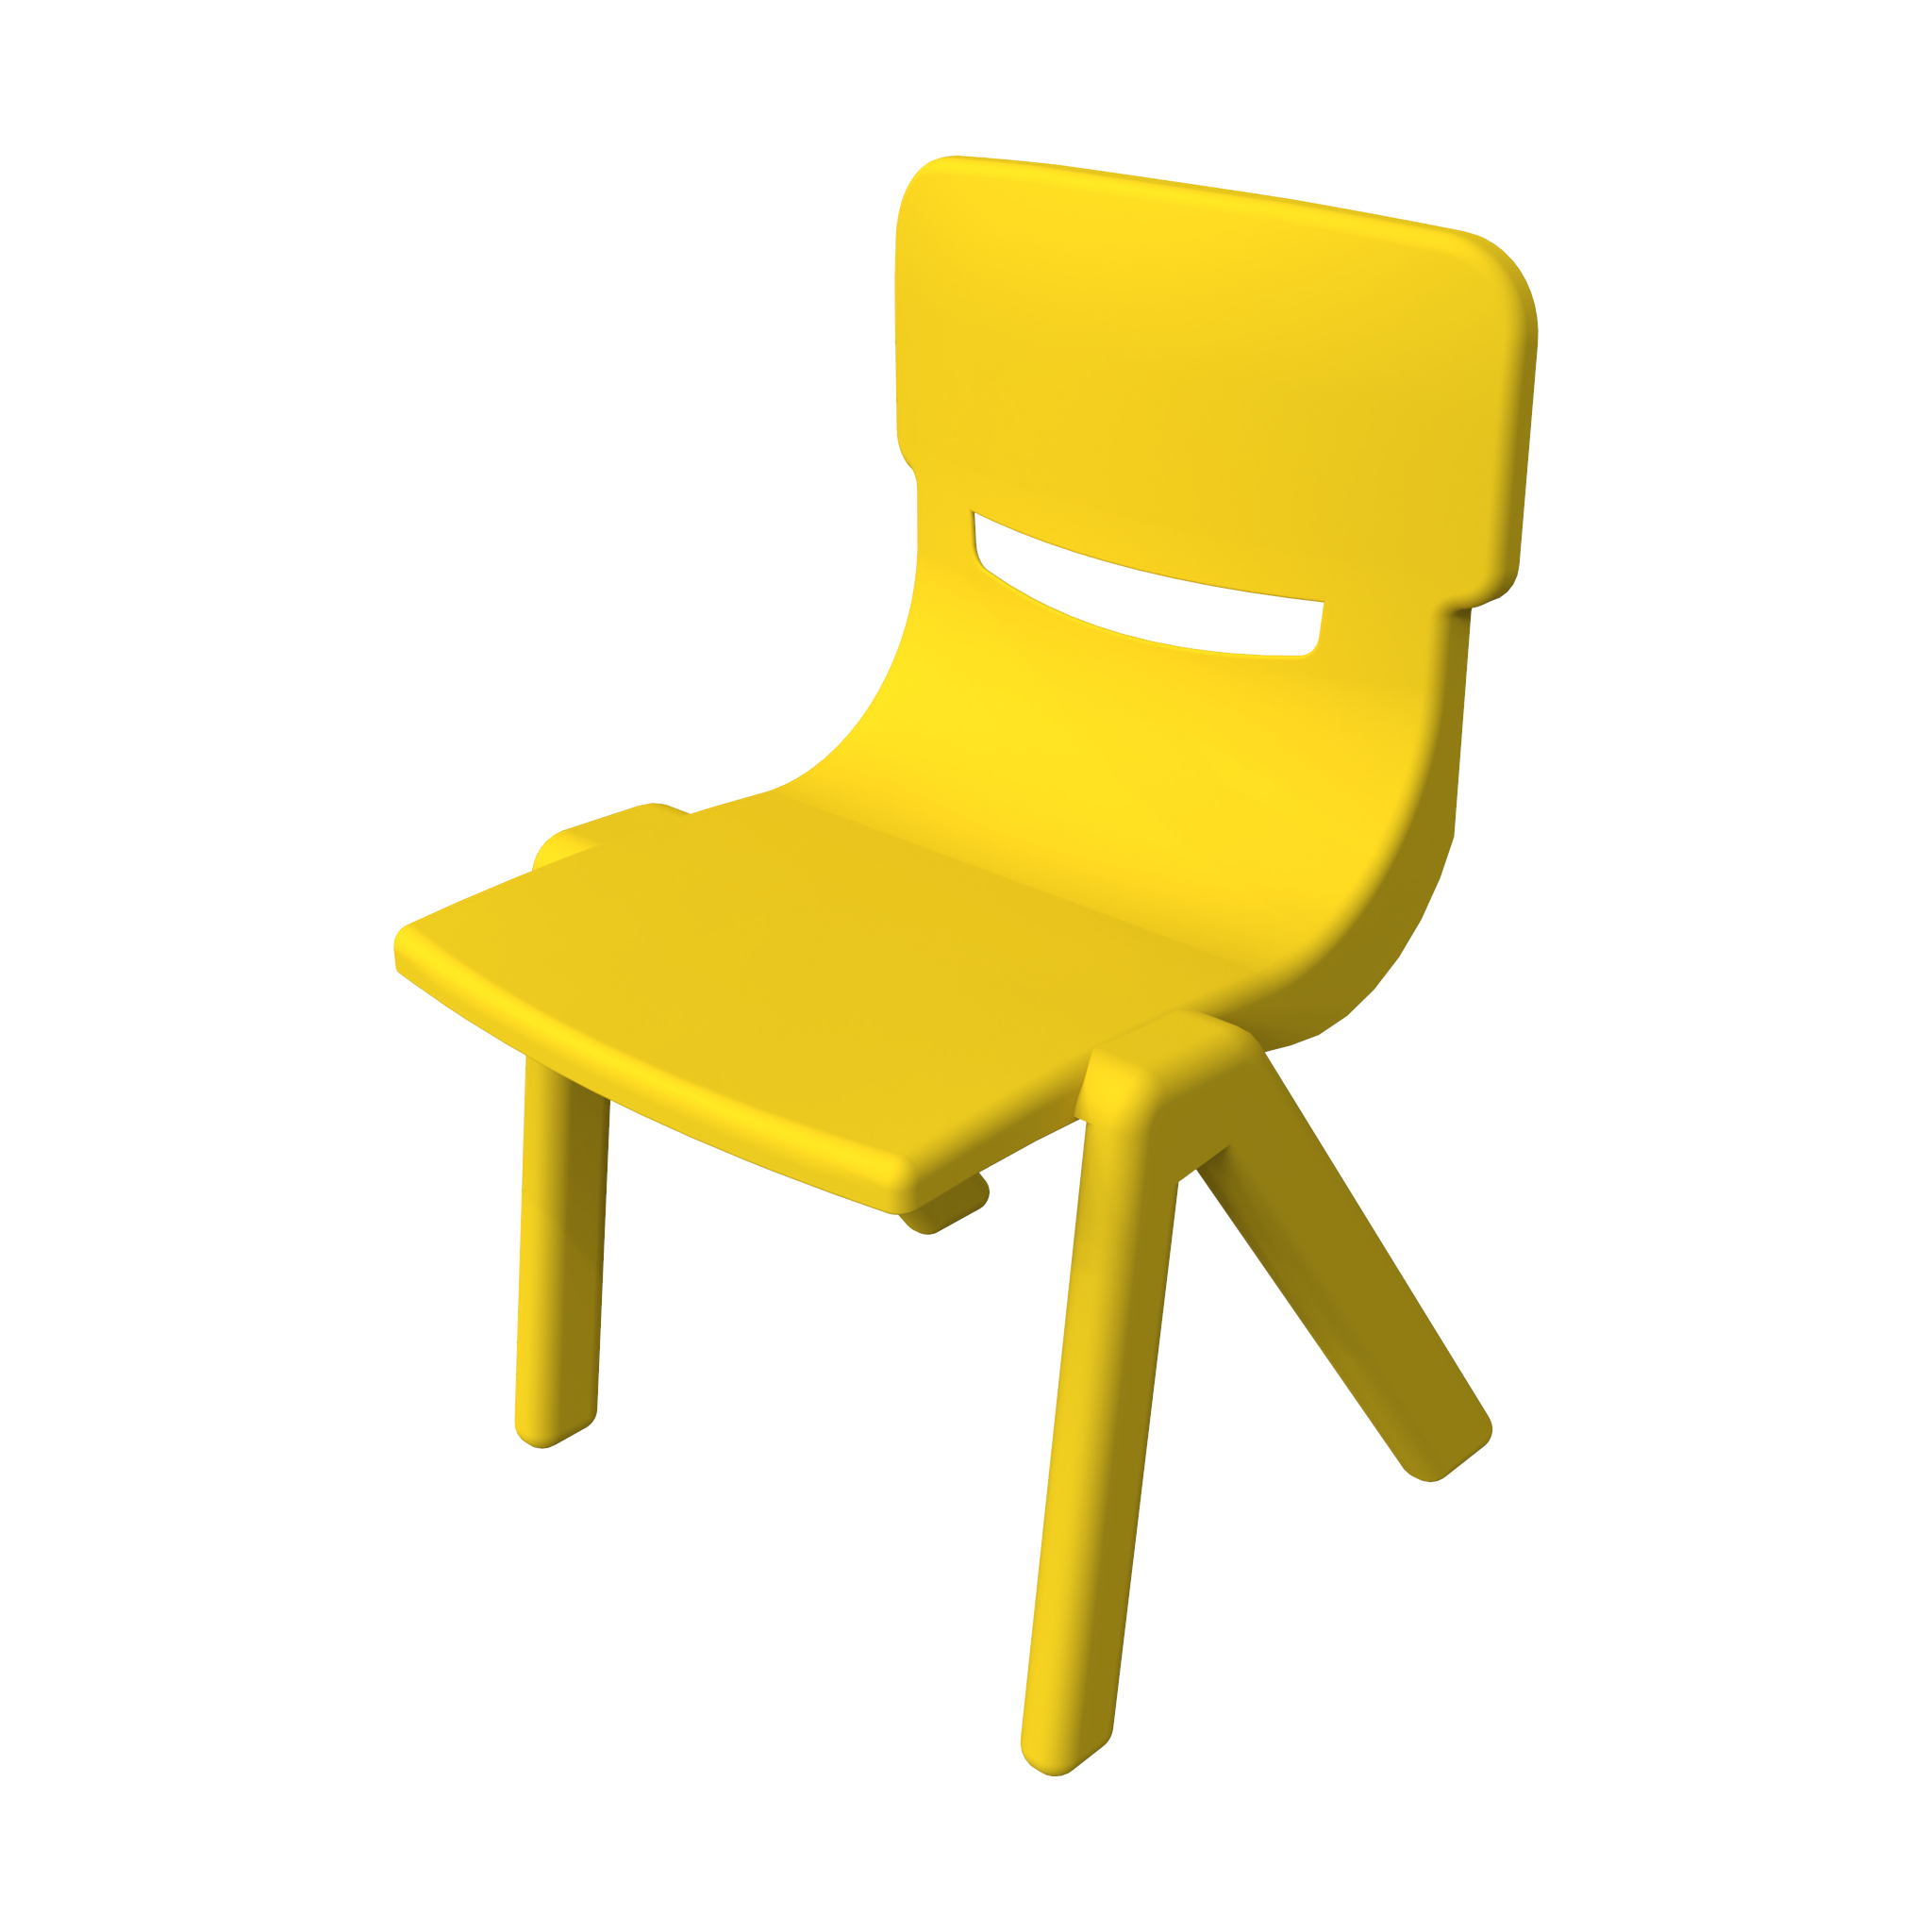 Это изображение показывает детская мебель Fun chair yellow